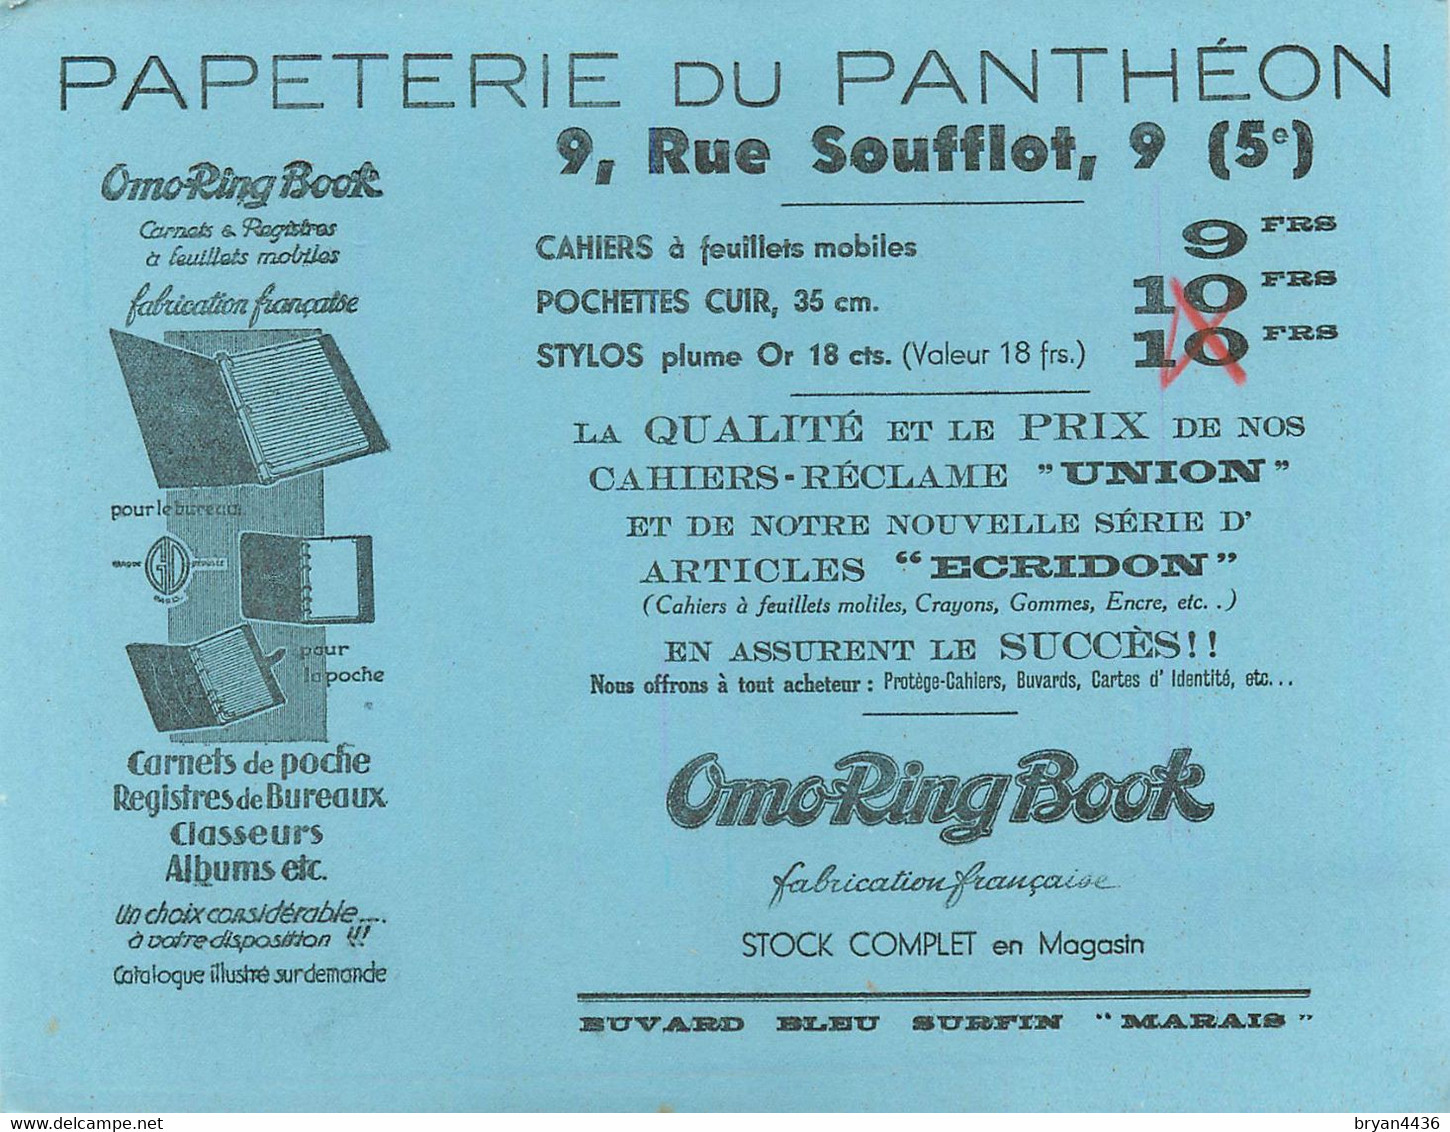 PAPETERIE DU PANTHEON - 9, RUE SOUFFLOT - PARIS 5° ARRONDISSEMENT - BUVARD ABCIEN ILLUSTRE (17 X 22 Cm). - Papeterie